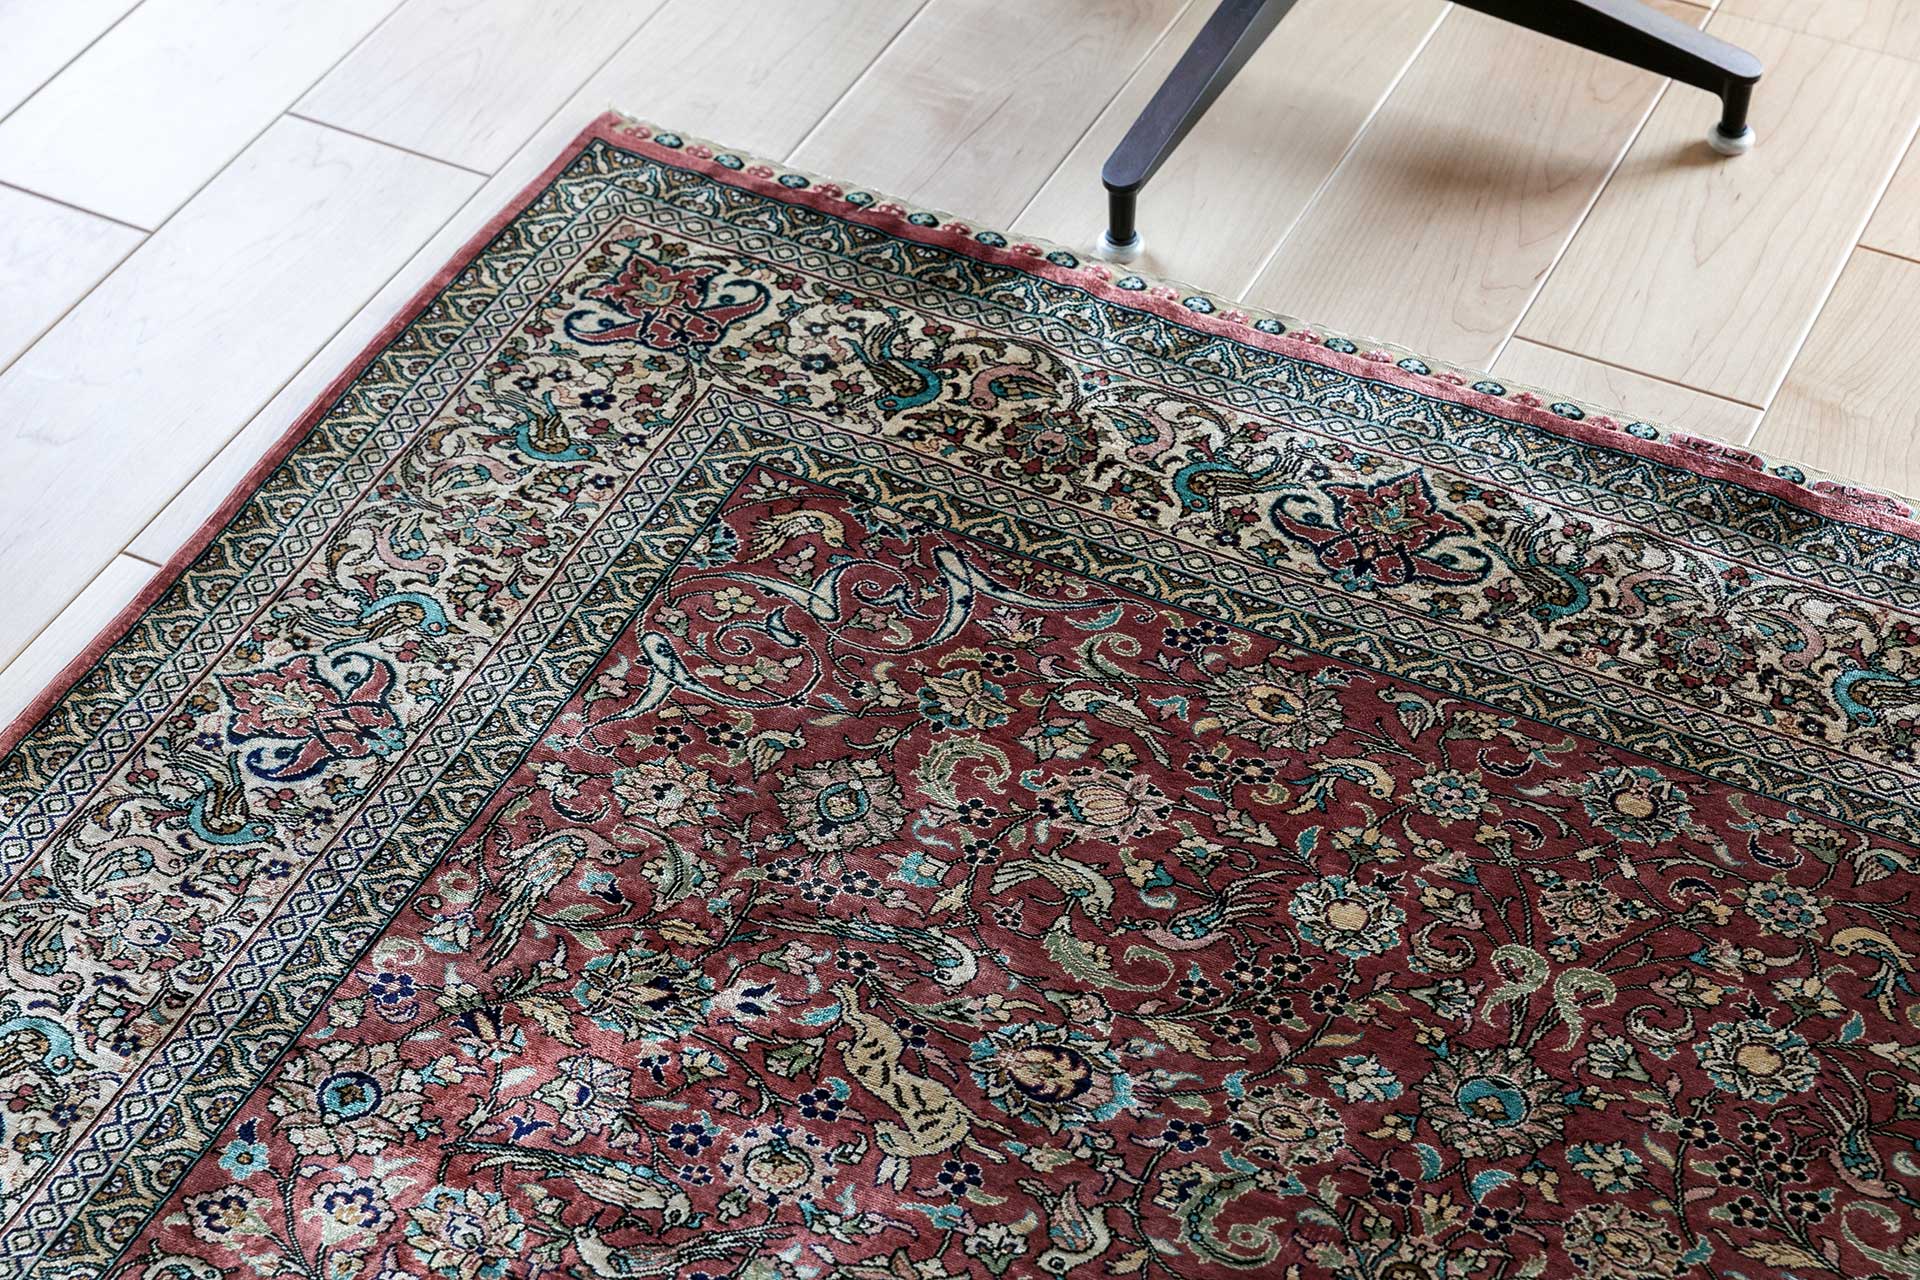 奥さまの叔父さまに譲っていただいたというのトルコ絨毯が、空間に彩りを添える。「叔父が若い頃にトルコで買ってきたもので、有名な工房で織られたものらしいです」 (奥さま) 。